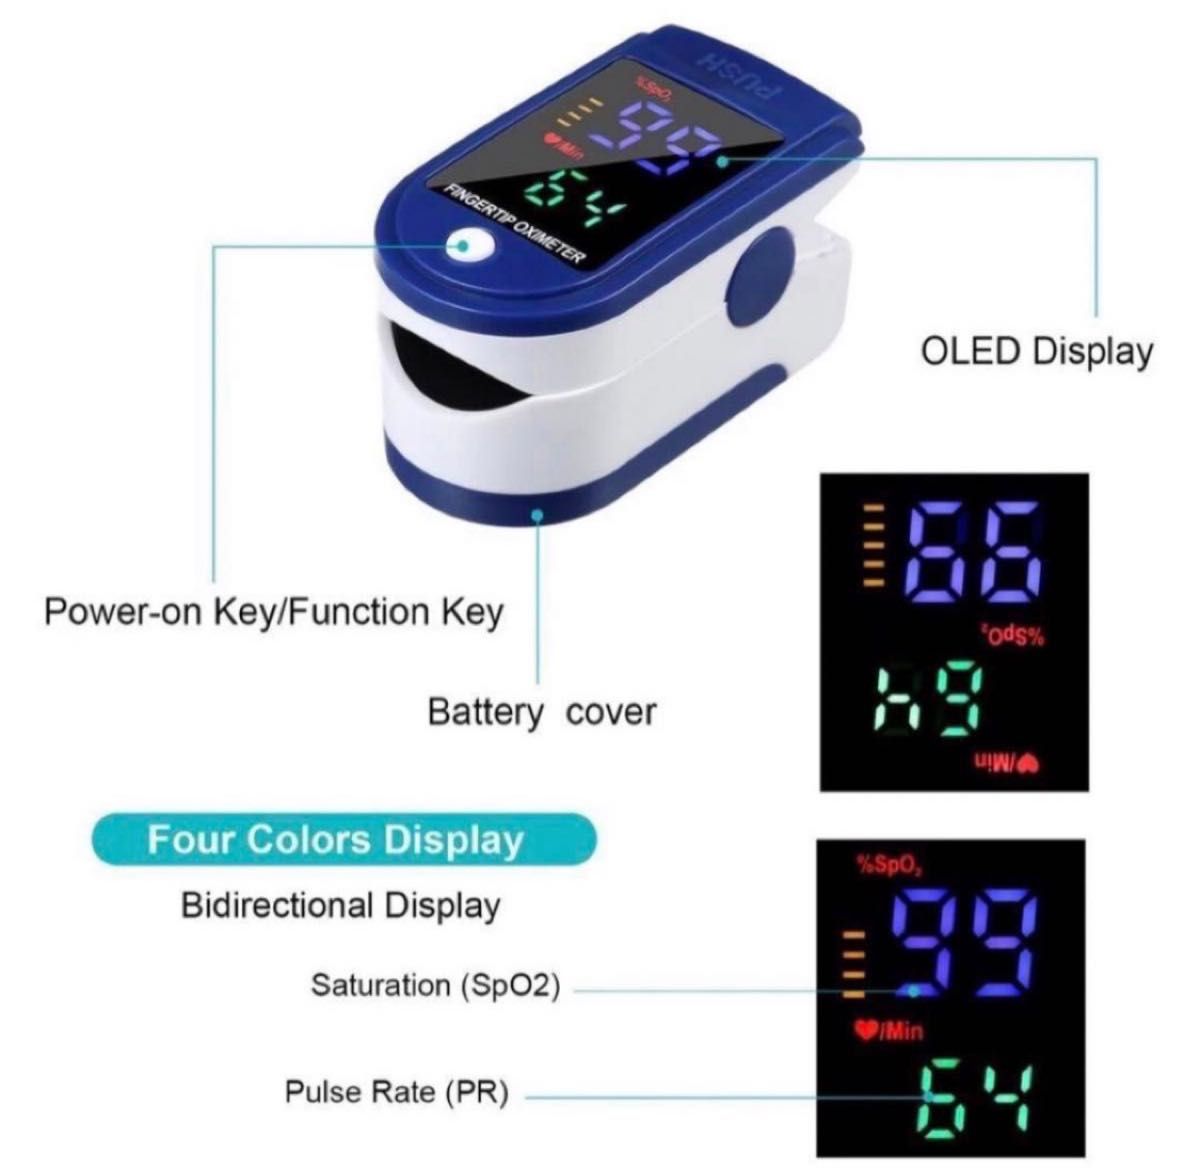 酸素濃度計 家庭用 血中酸素濃度測定器 心拍計 非医療用 非パルスオキシメーター